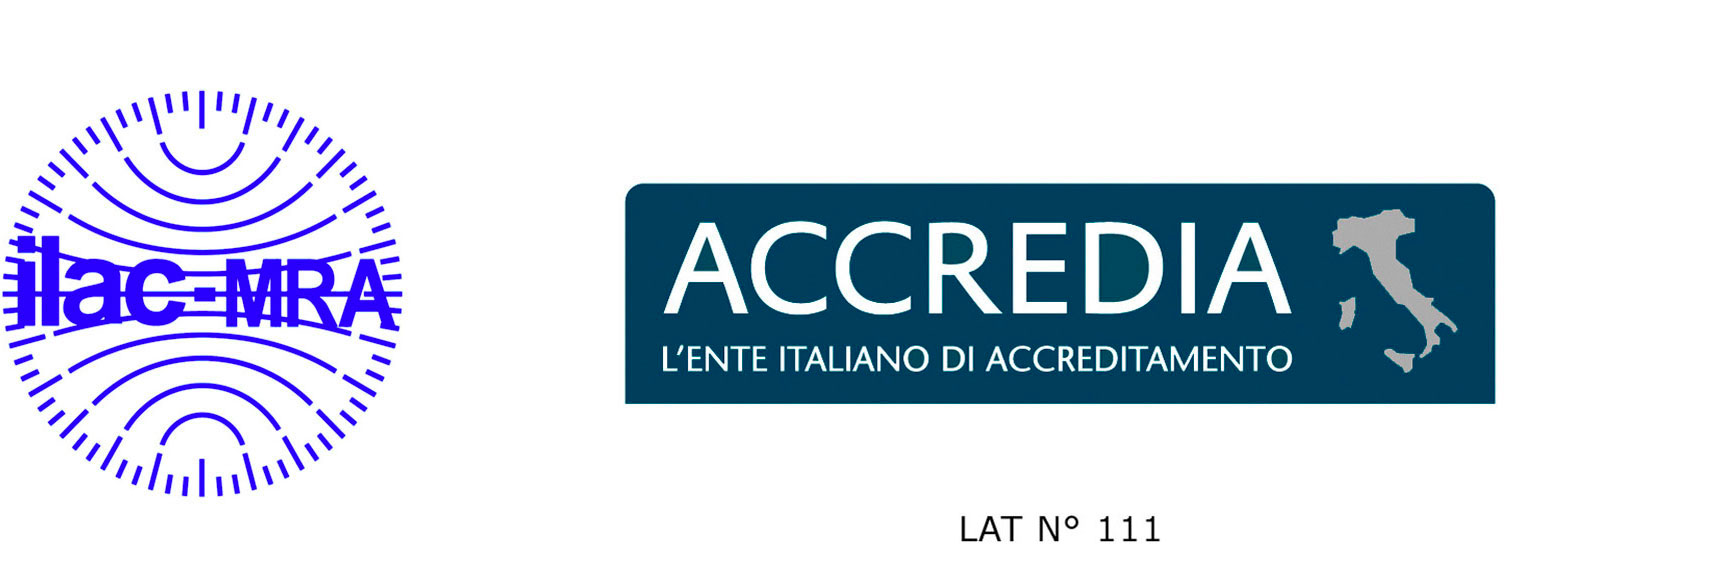 Centro tarature accreditato ACCREDIA n° 111, in conformità a UNI CEI EN ISO/IEC 17025:2018